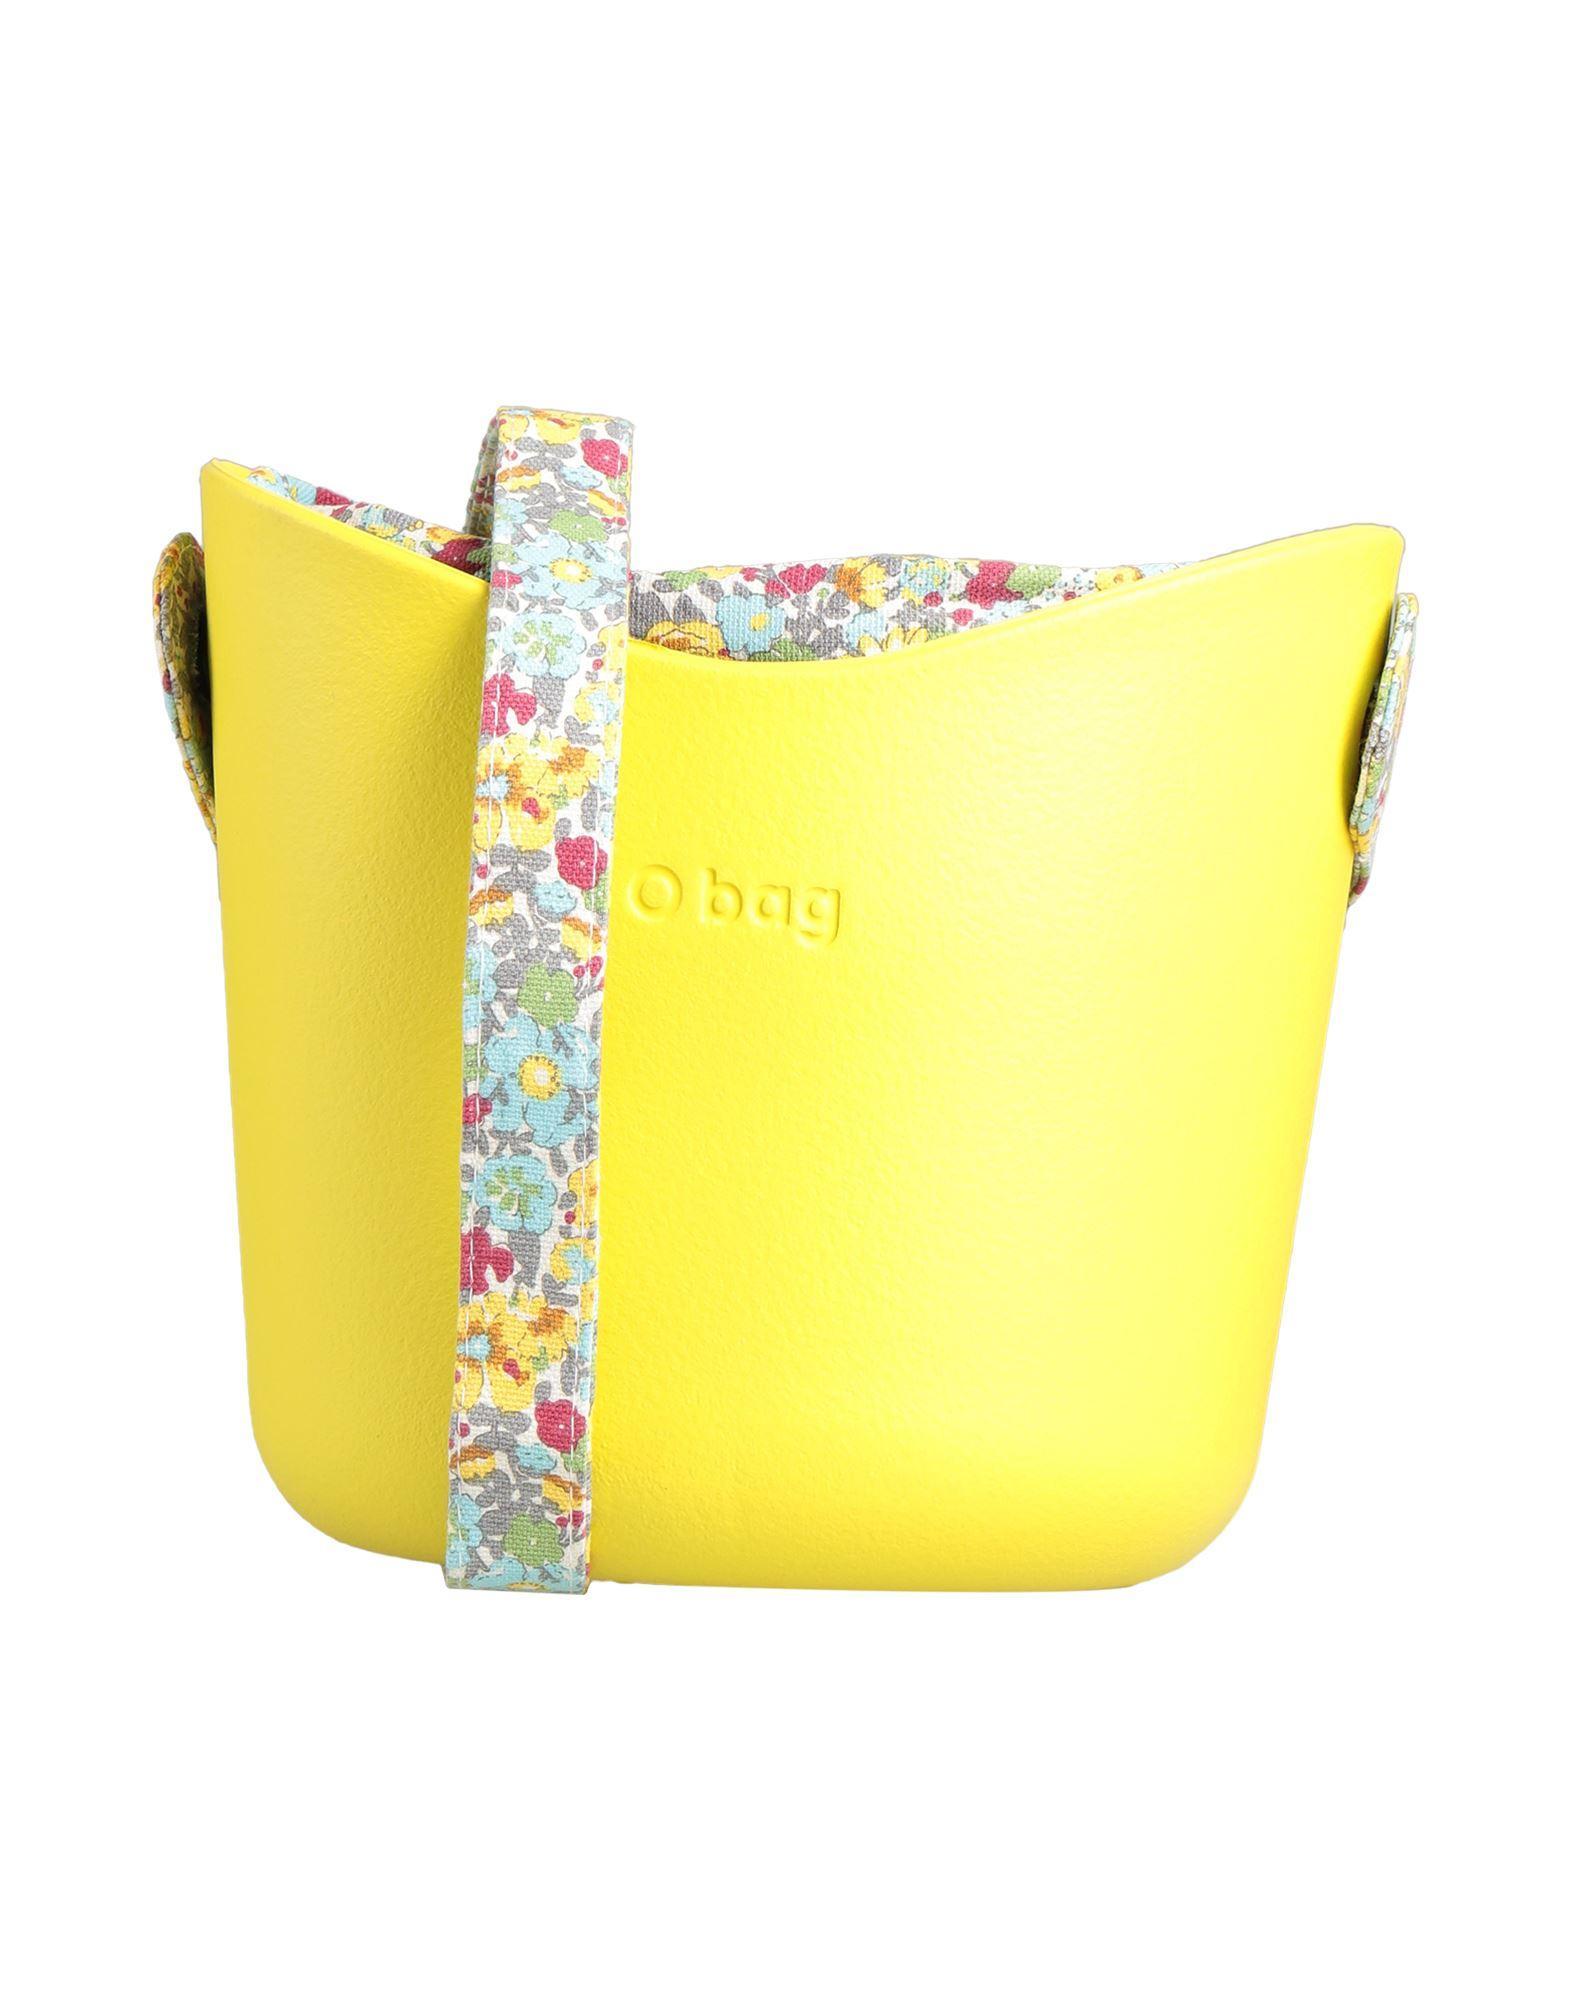 O bag Cross-body Bag in Yellow | Lyst